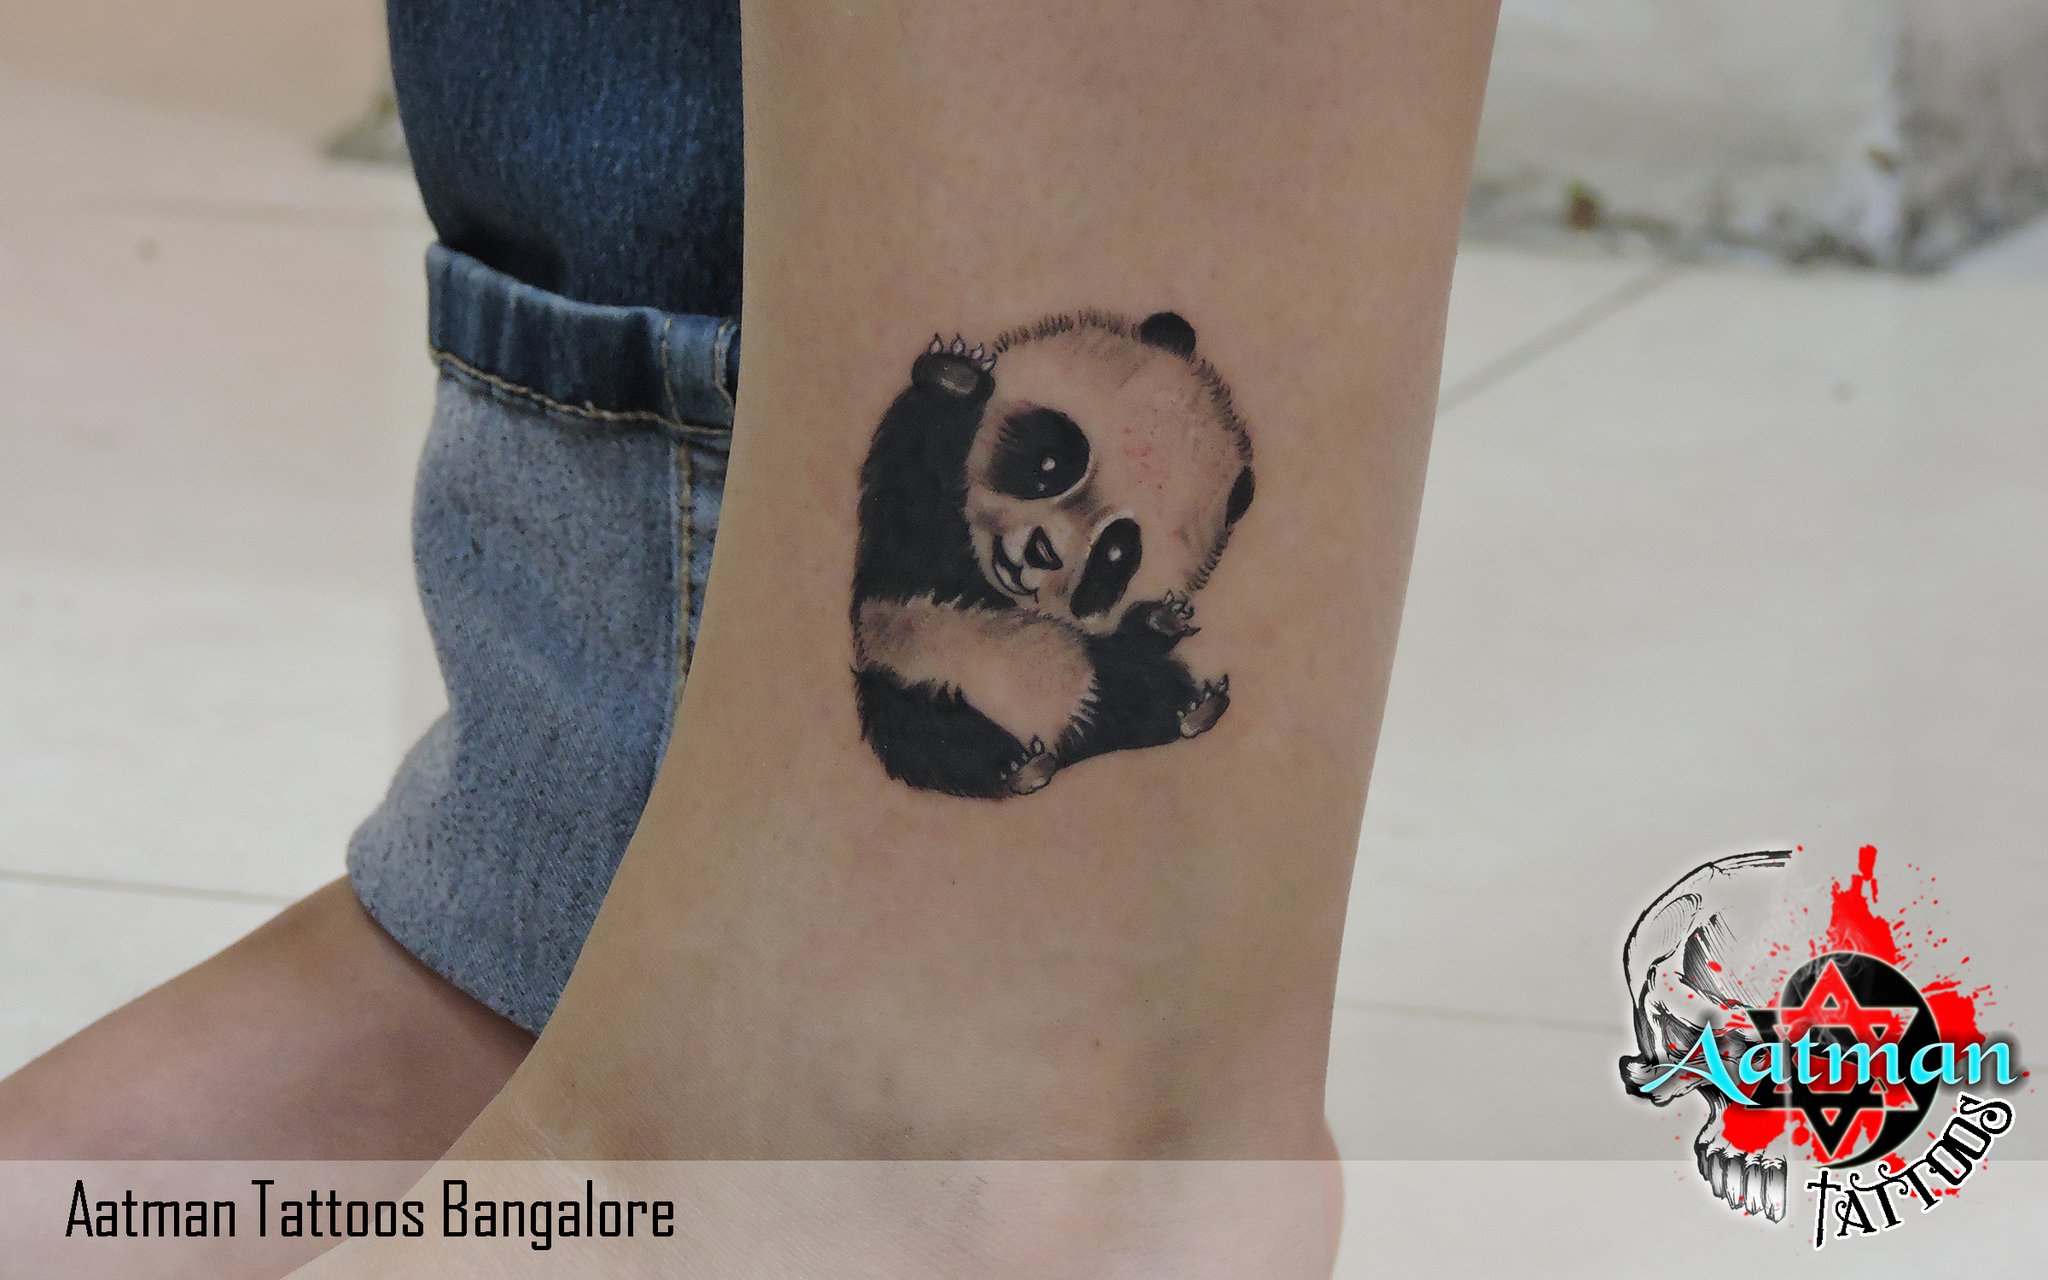 Panda Girl by Wang at Fridays Tattoo Hong Kong  rtattoos